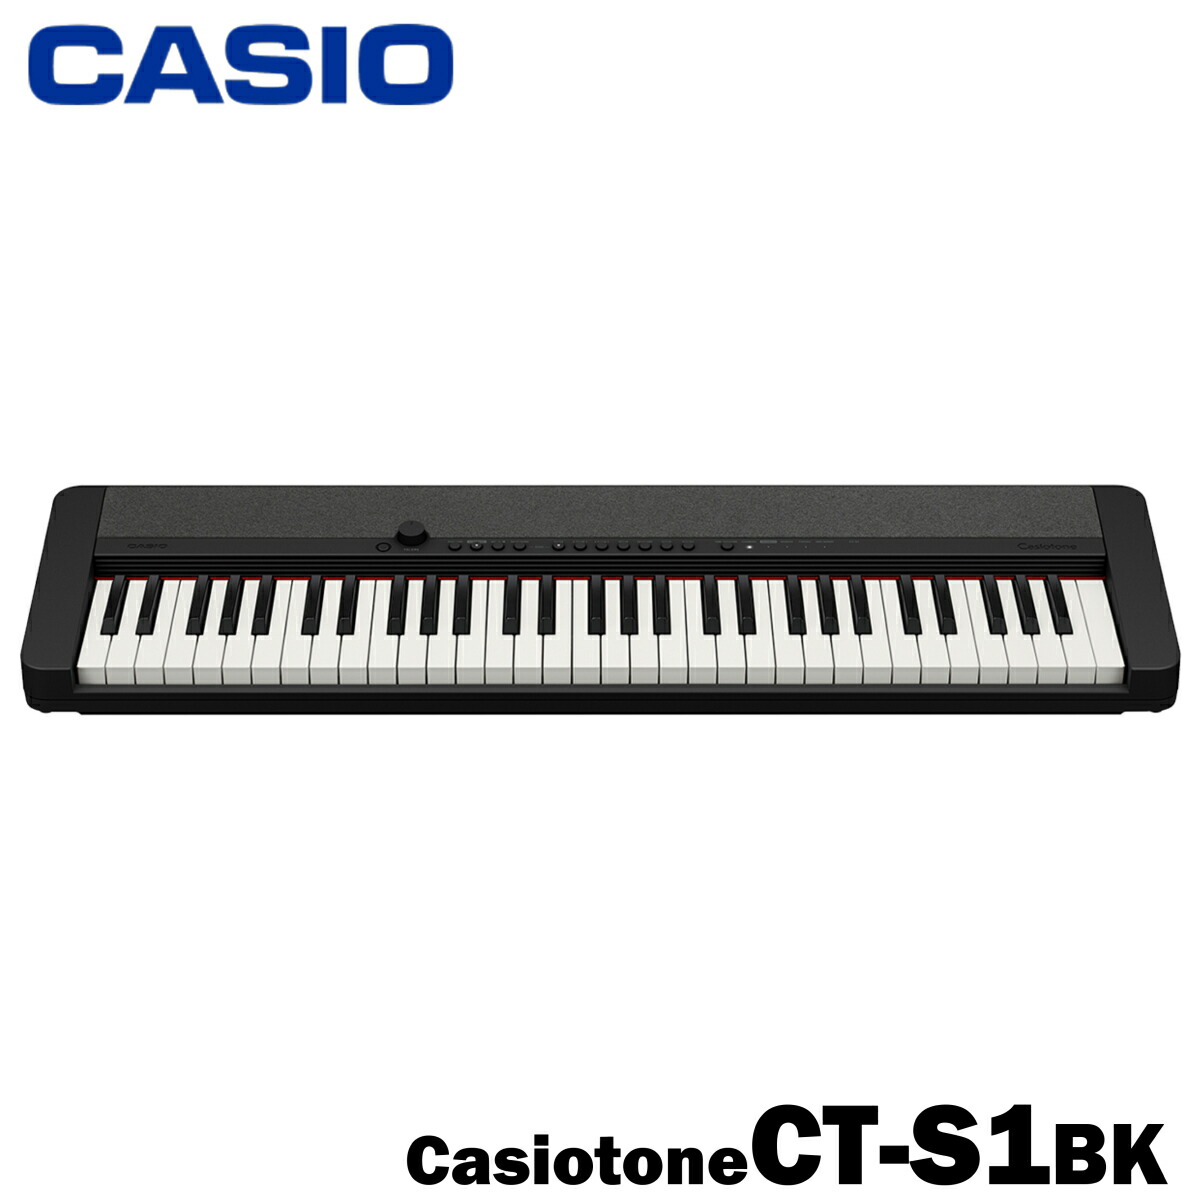 CASIO キーボード Casiotone CT-S1BK / ブラック